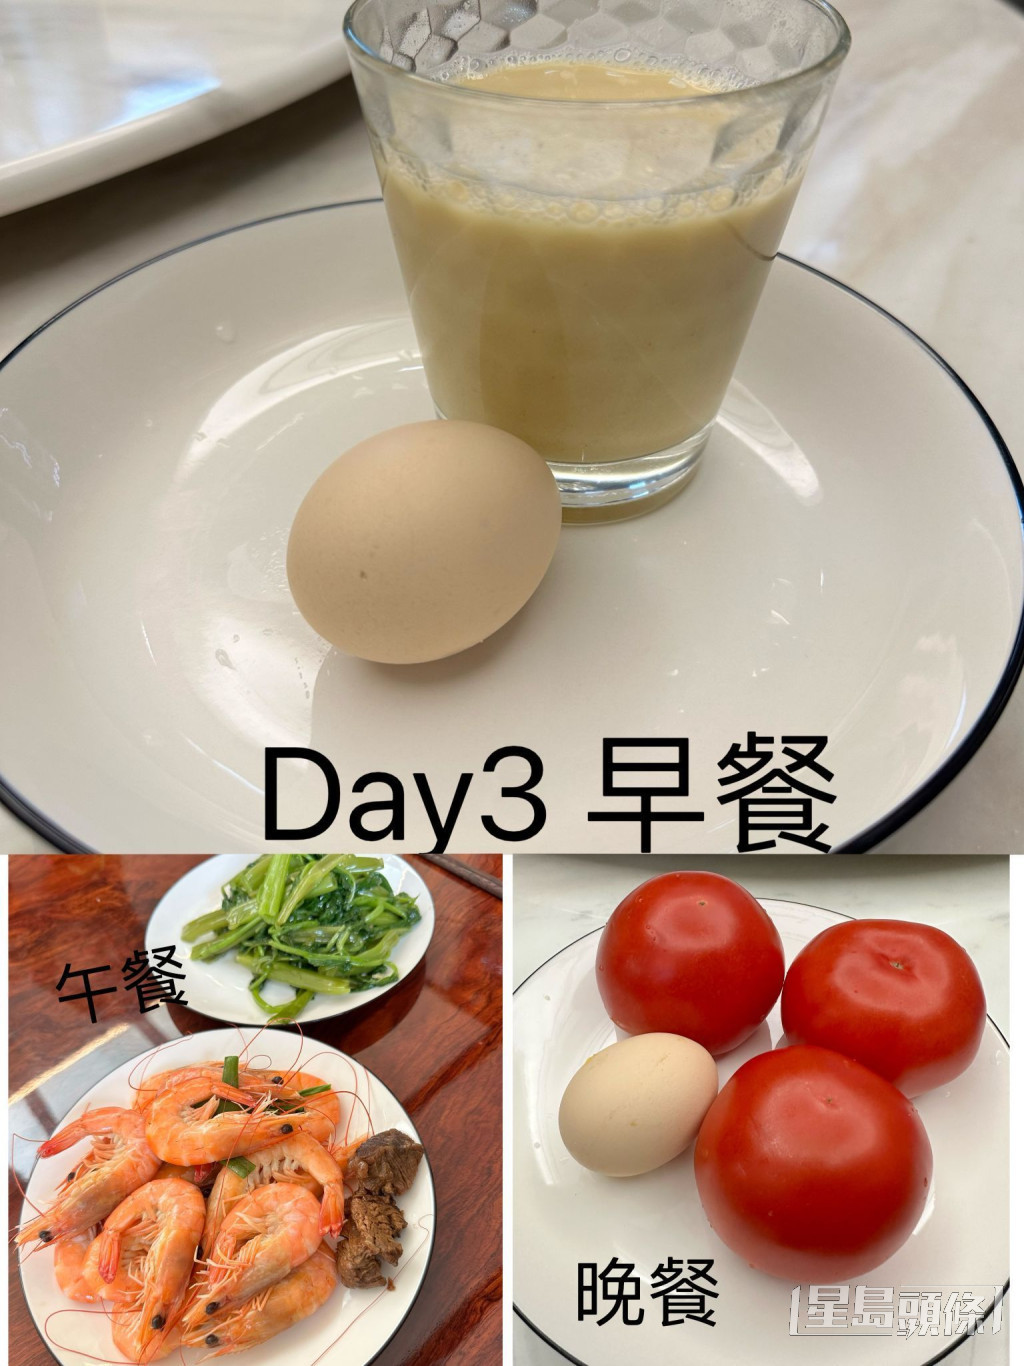 第三日早餐：無糖豆漿加1烚蛋；午餐：灼通菜和白灼蝦，仲有偷食咗兩粒牛肉；晚餐3生蕃茄和1烚蛋。